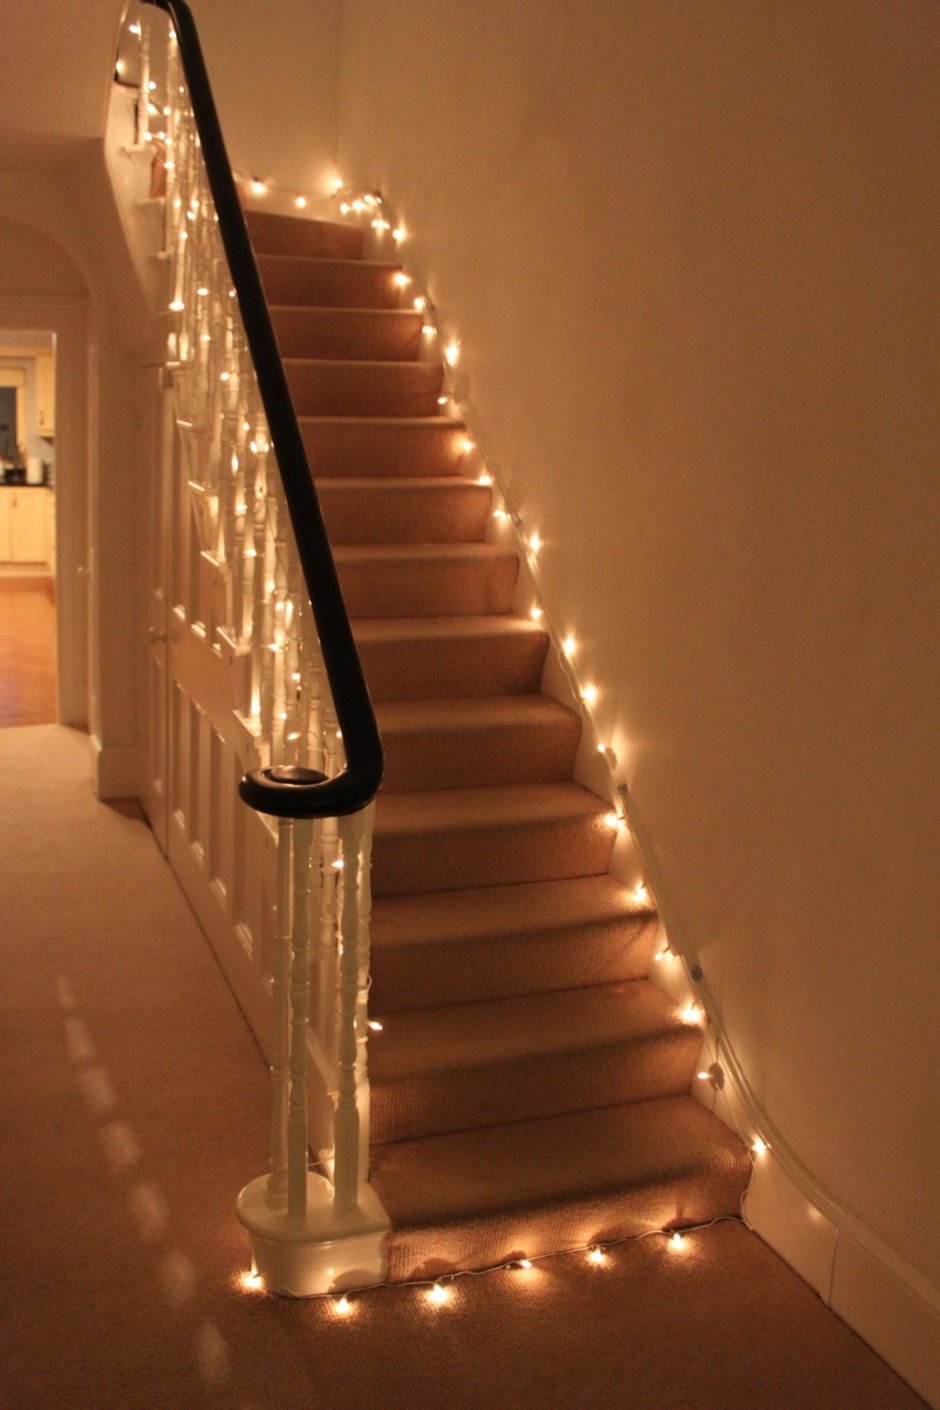 Освещение лестницы в доме